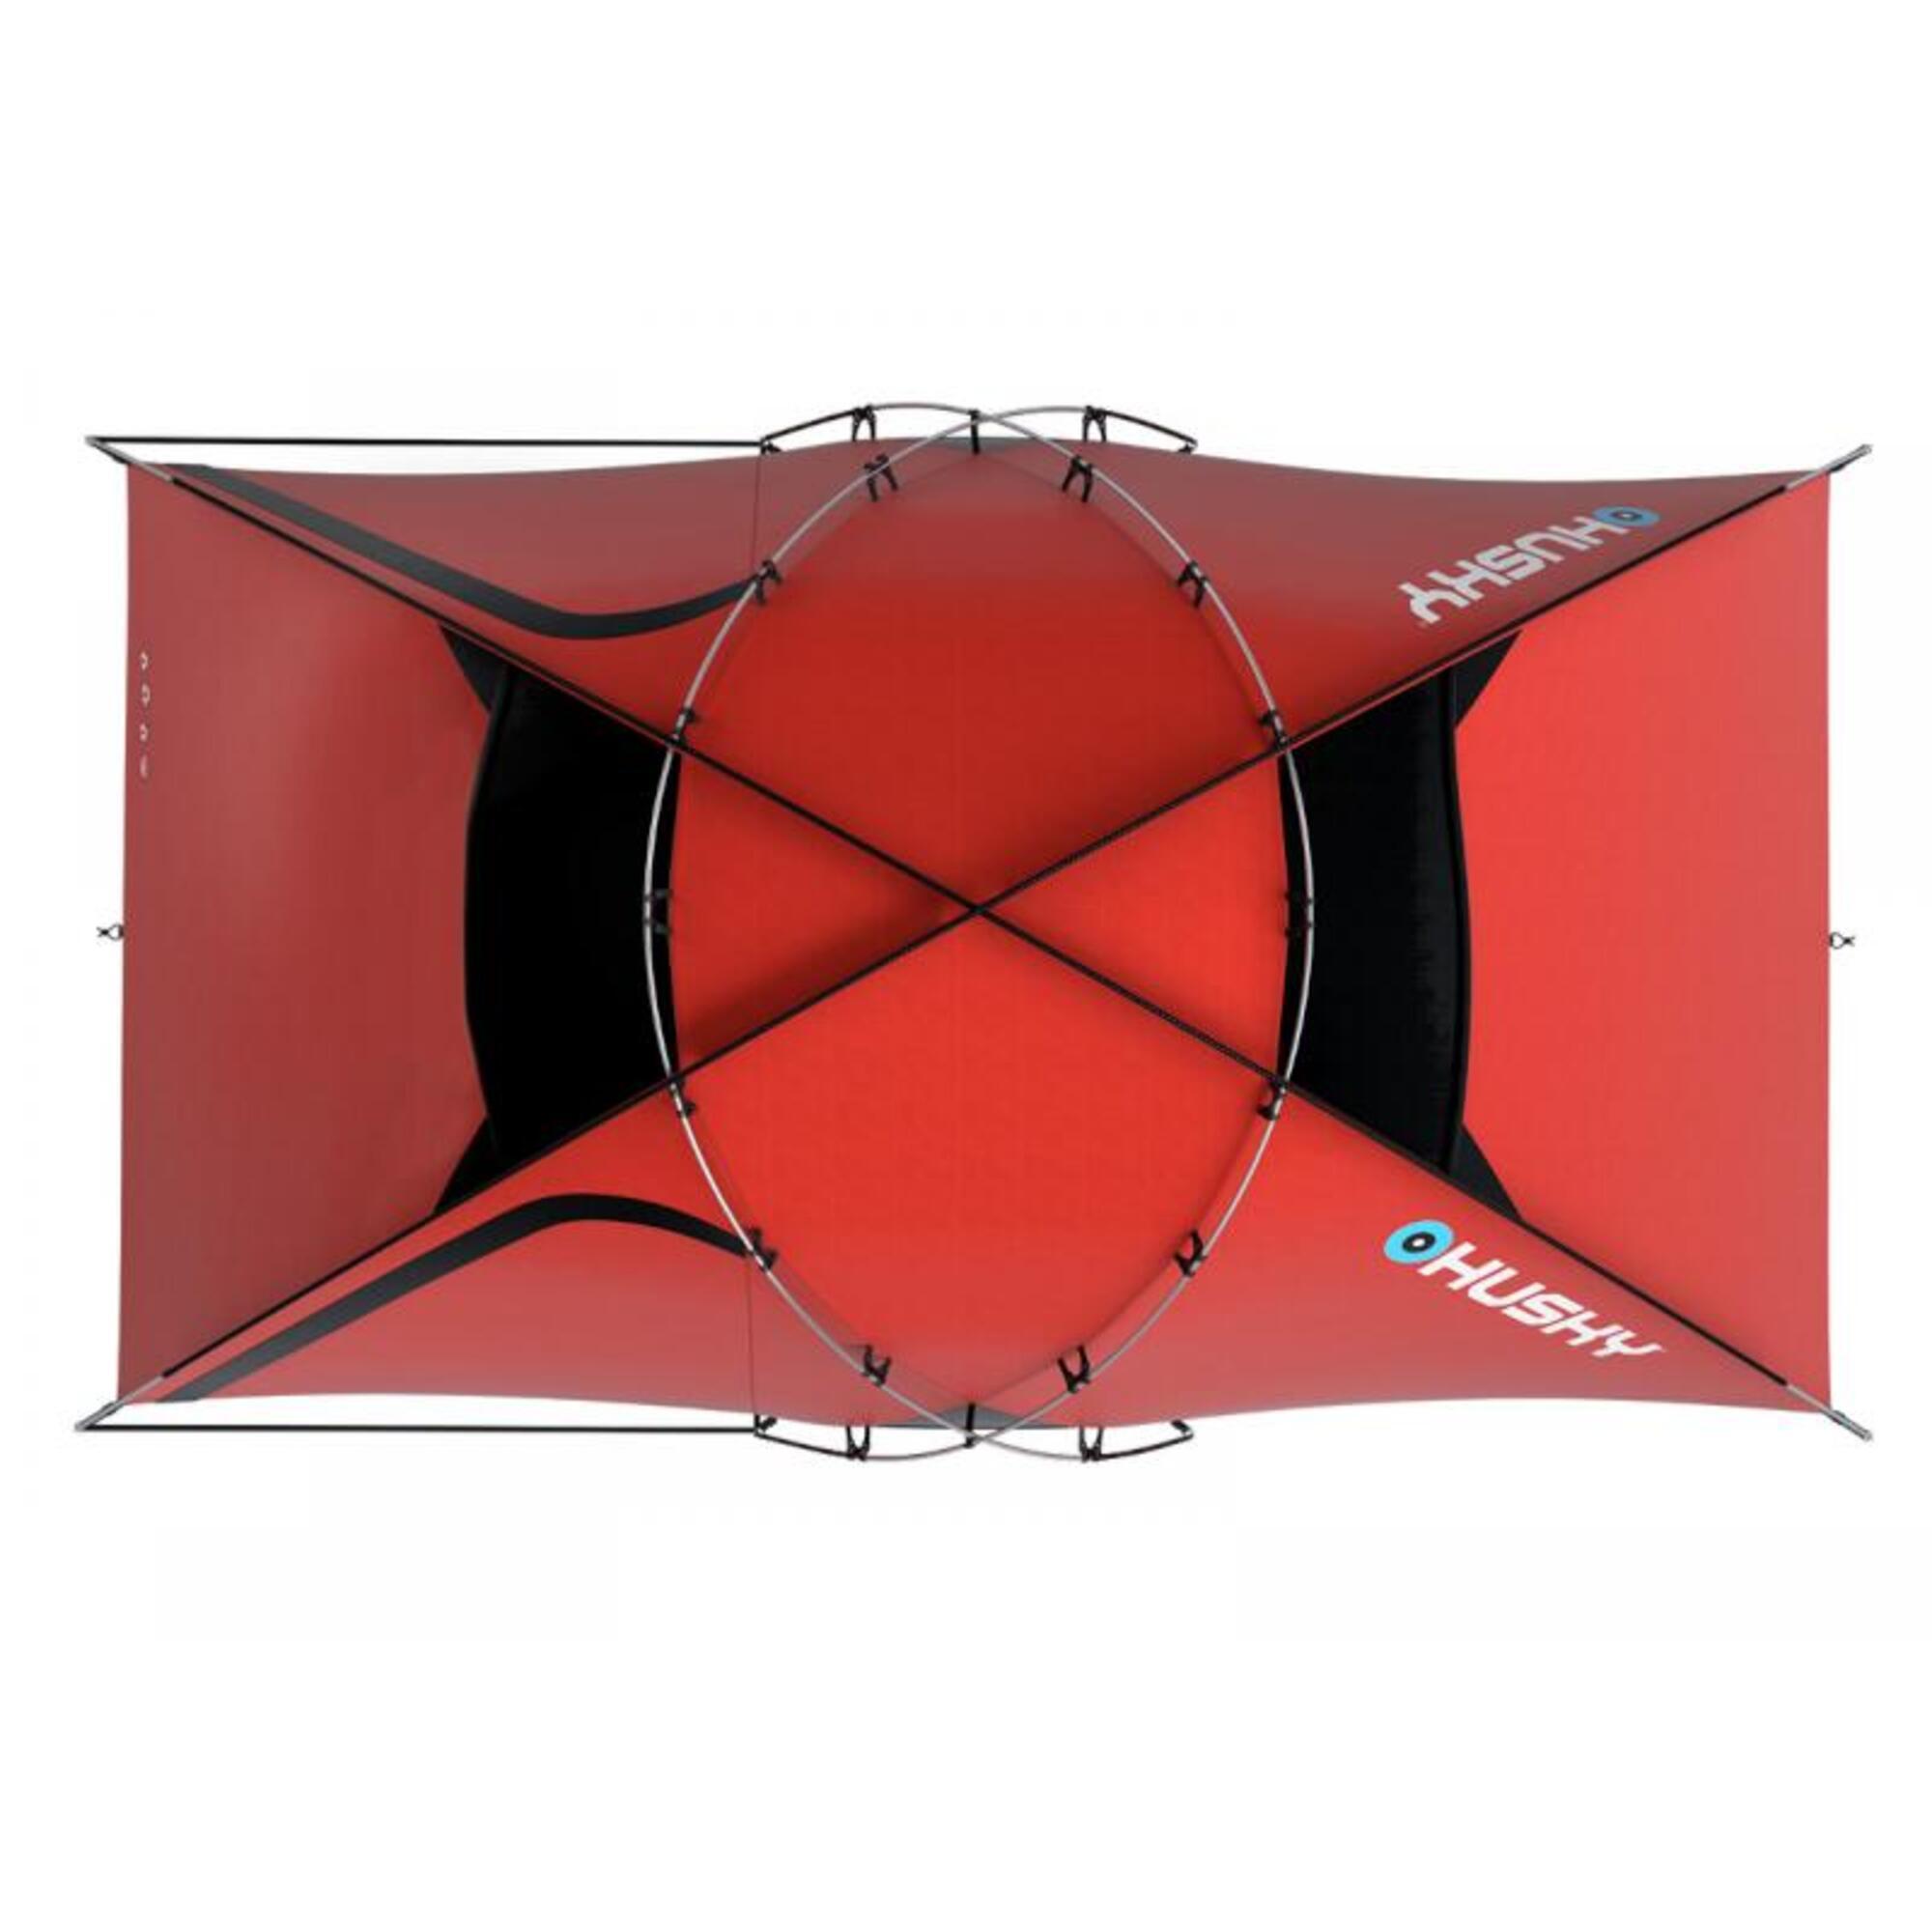 Tente Extreme Felen 3-4 - tente légère - 3-4 personnes - Rouge